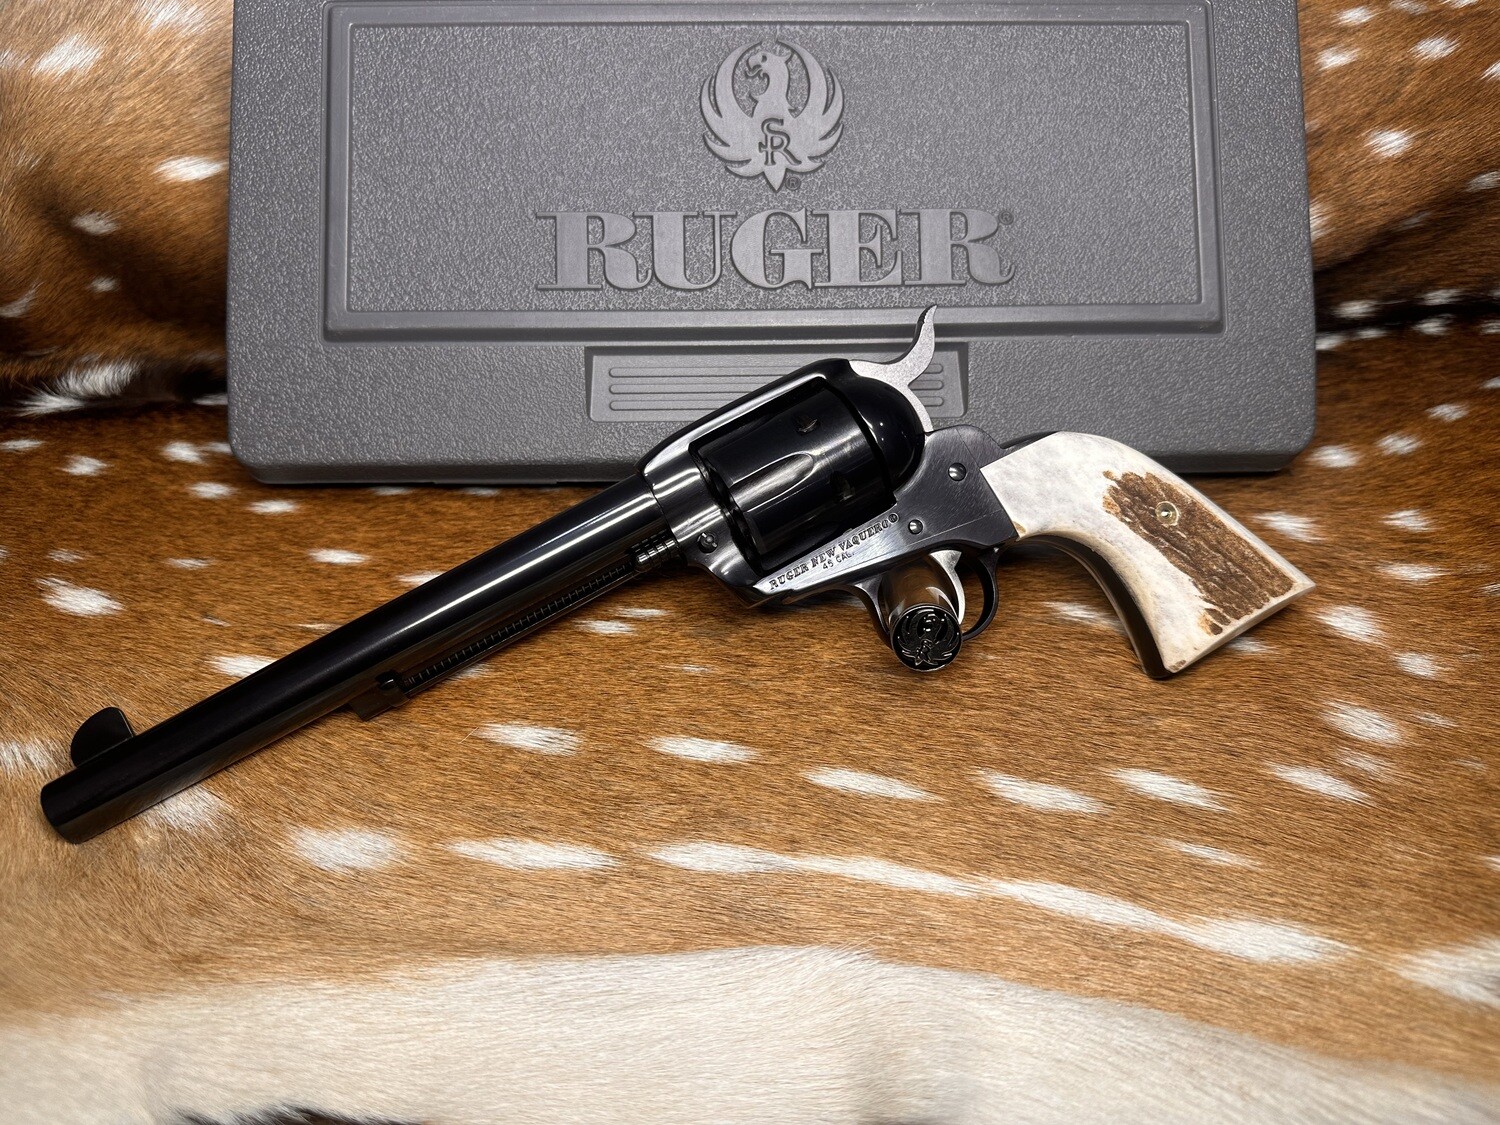 Ruger New Vaquero .45 Cal Revolver